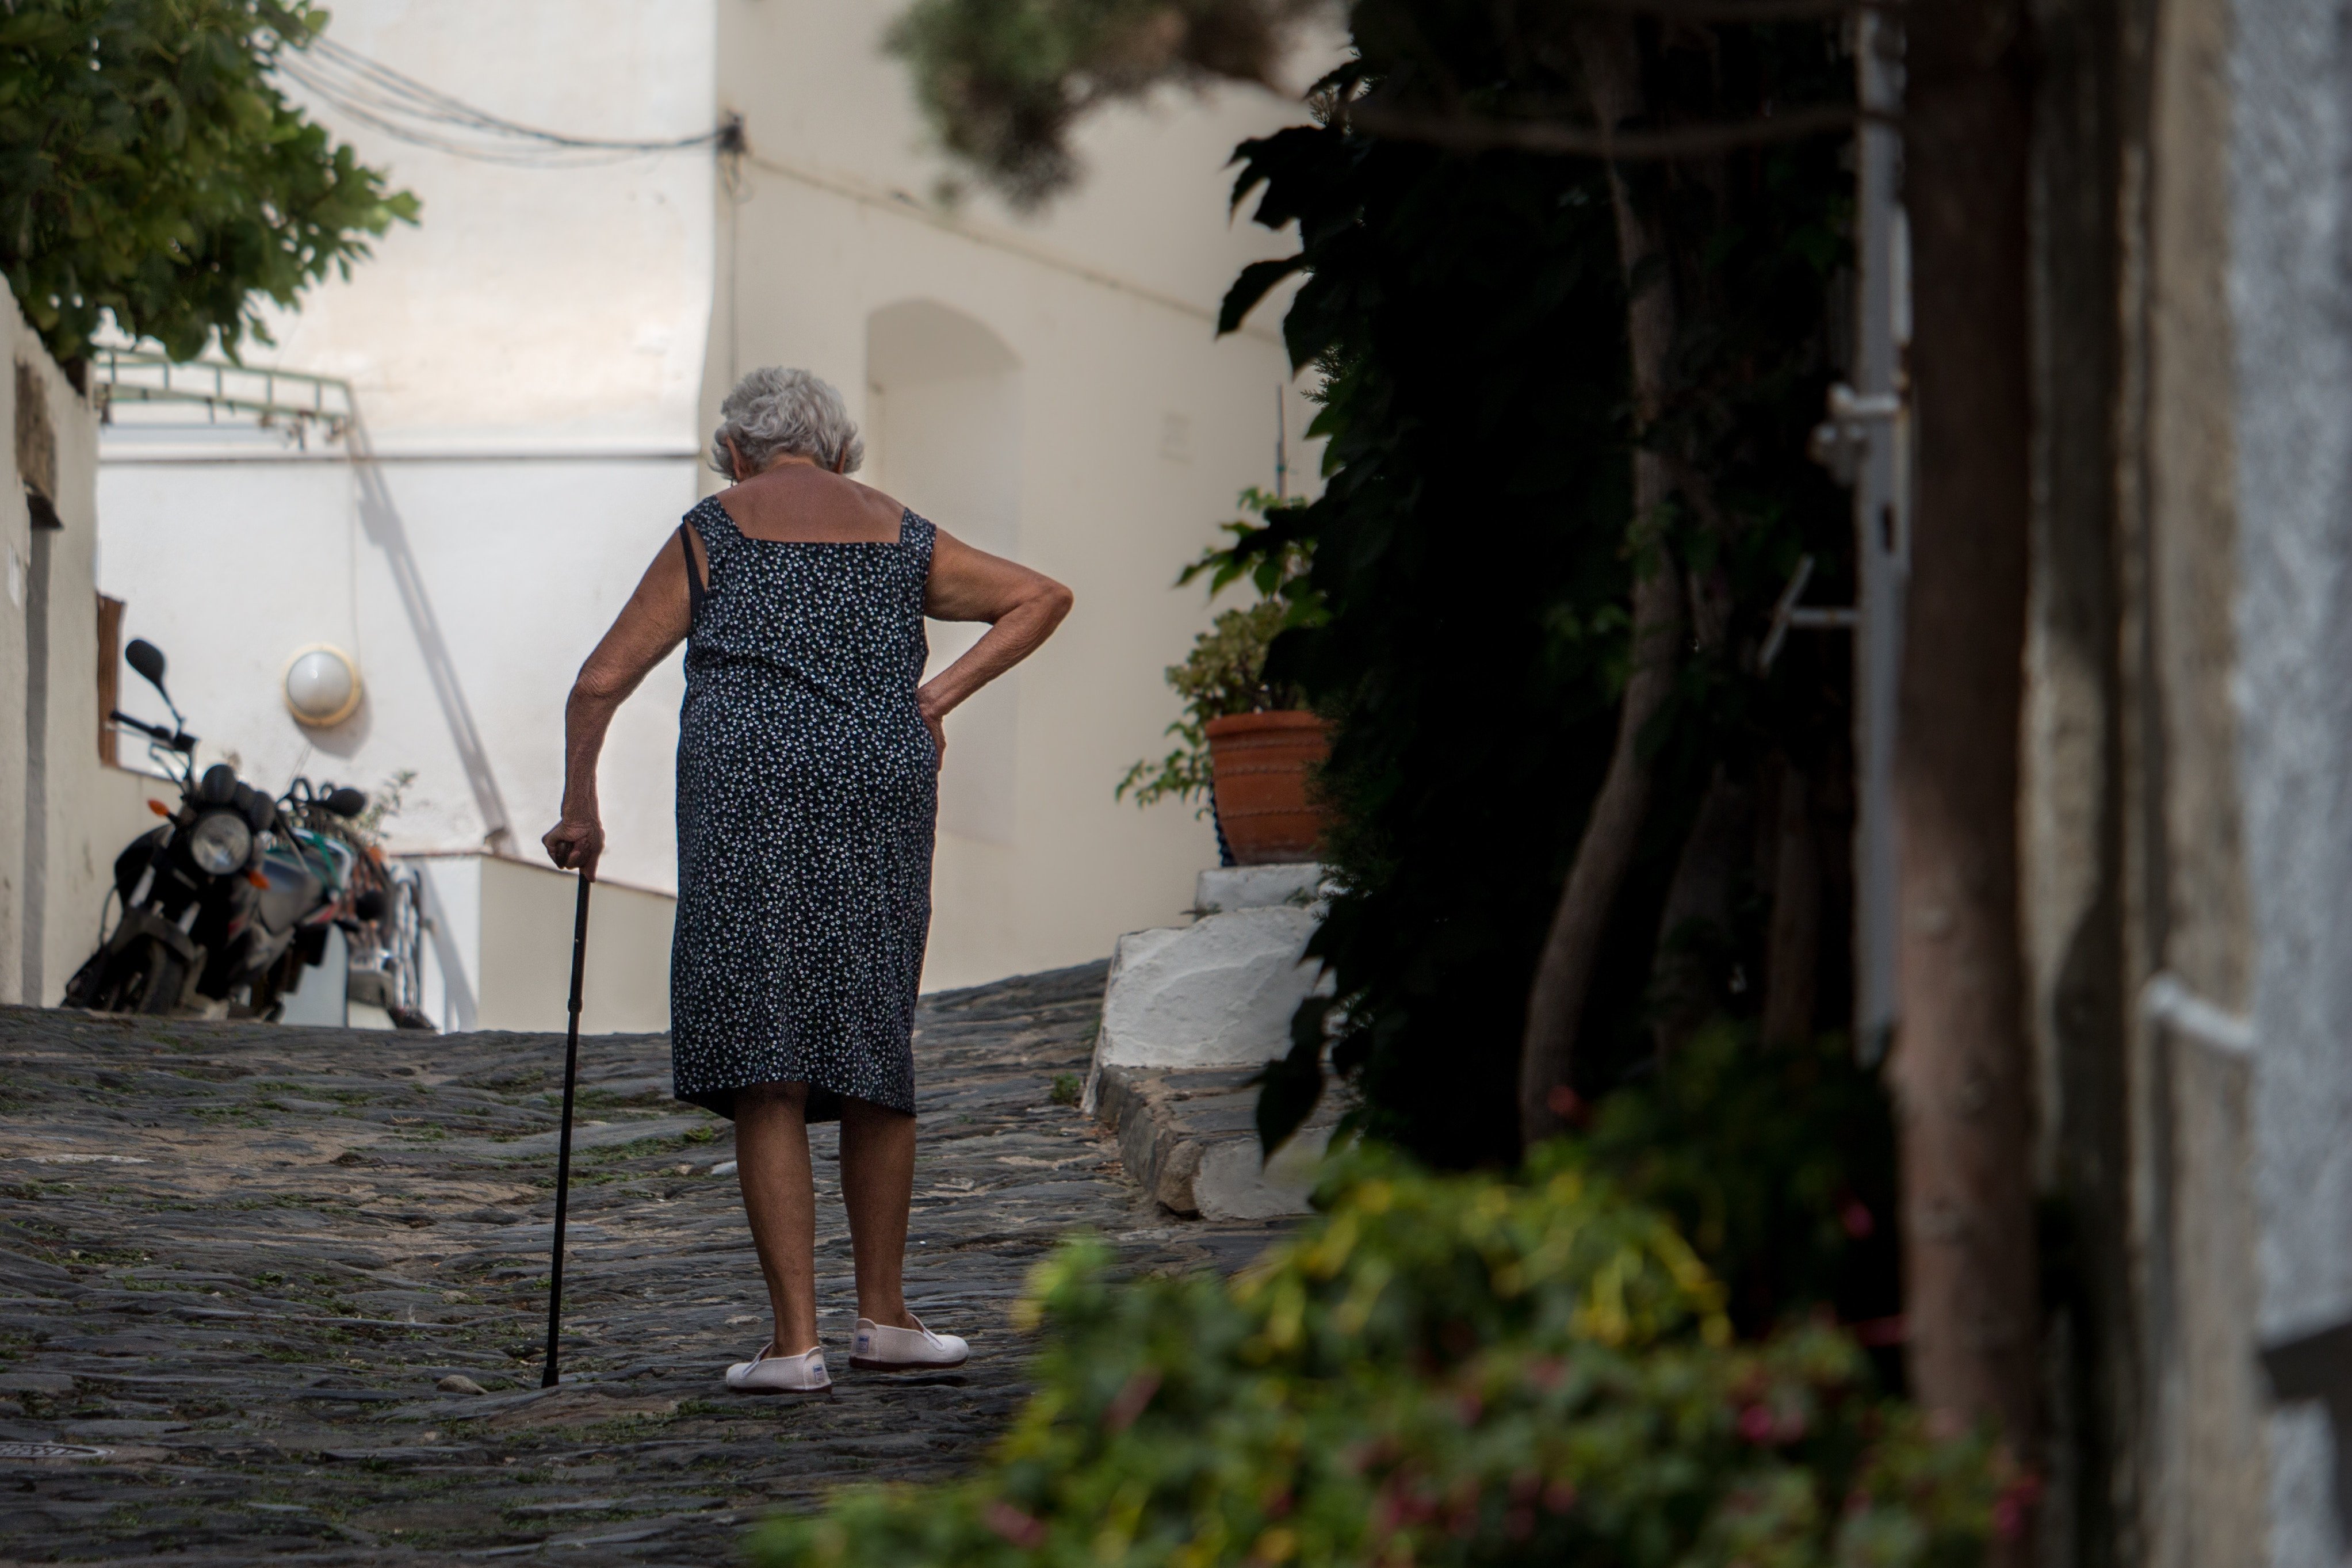 Une Grand-mère marchant en tenant une canne | Source : Unsplash